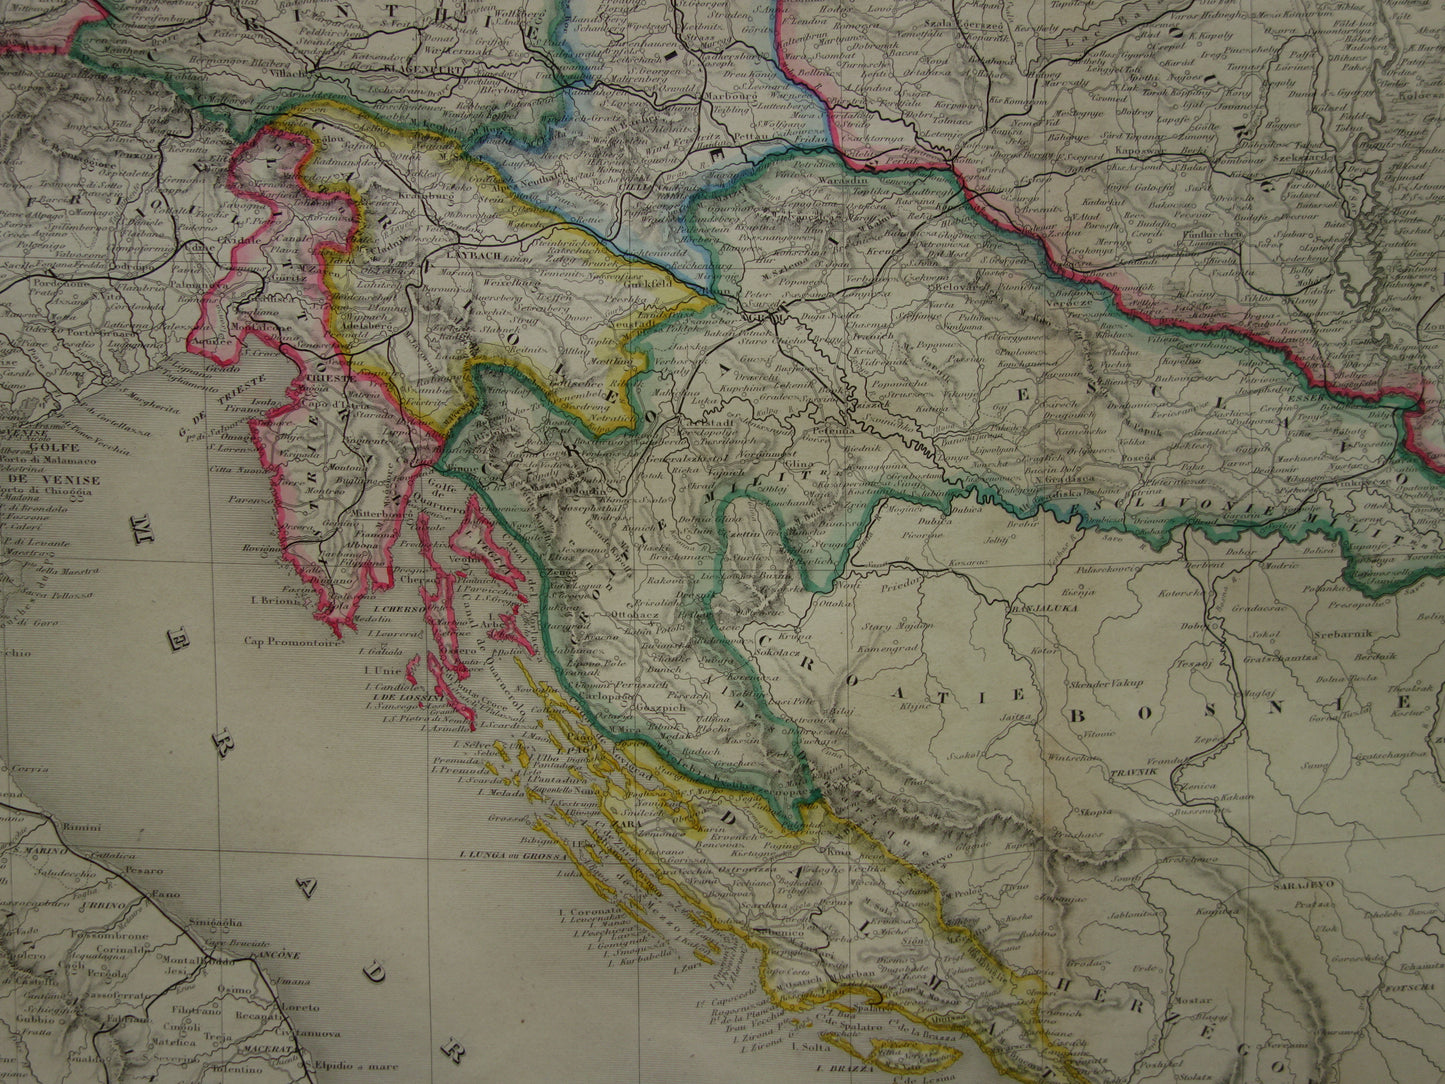 Oude kaart van Oostenrijk-Hongarije Zeer grote originele antieke handgekleurde landkaart Tsjechië Kroatië Slovenië vintage kaarten